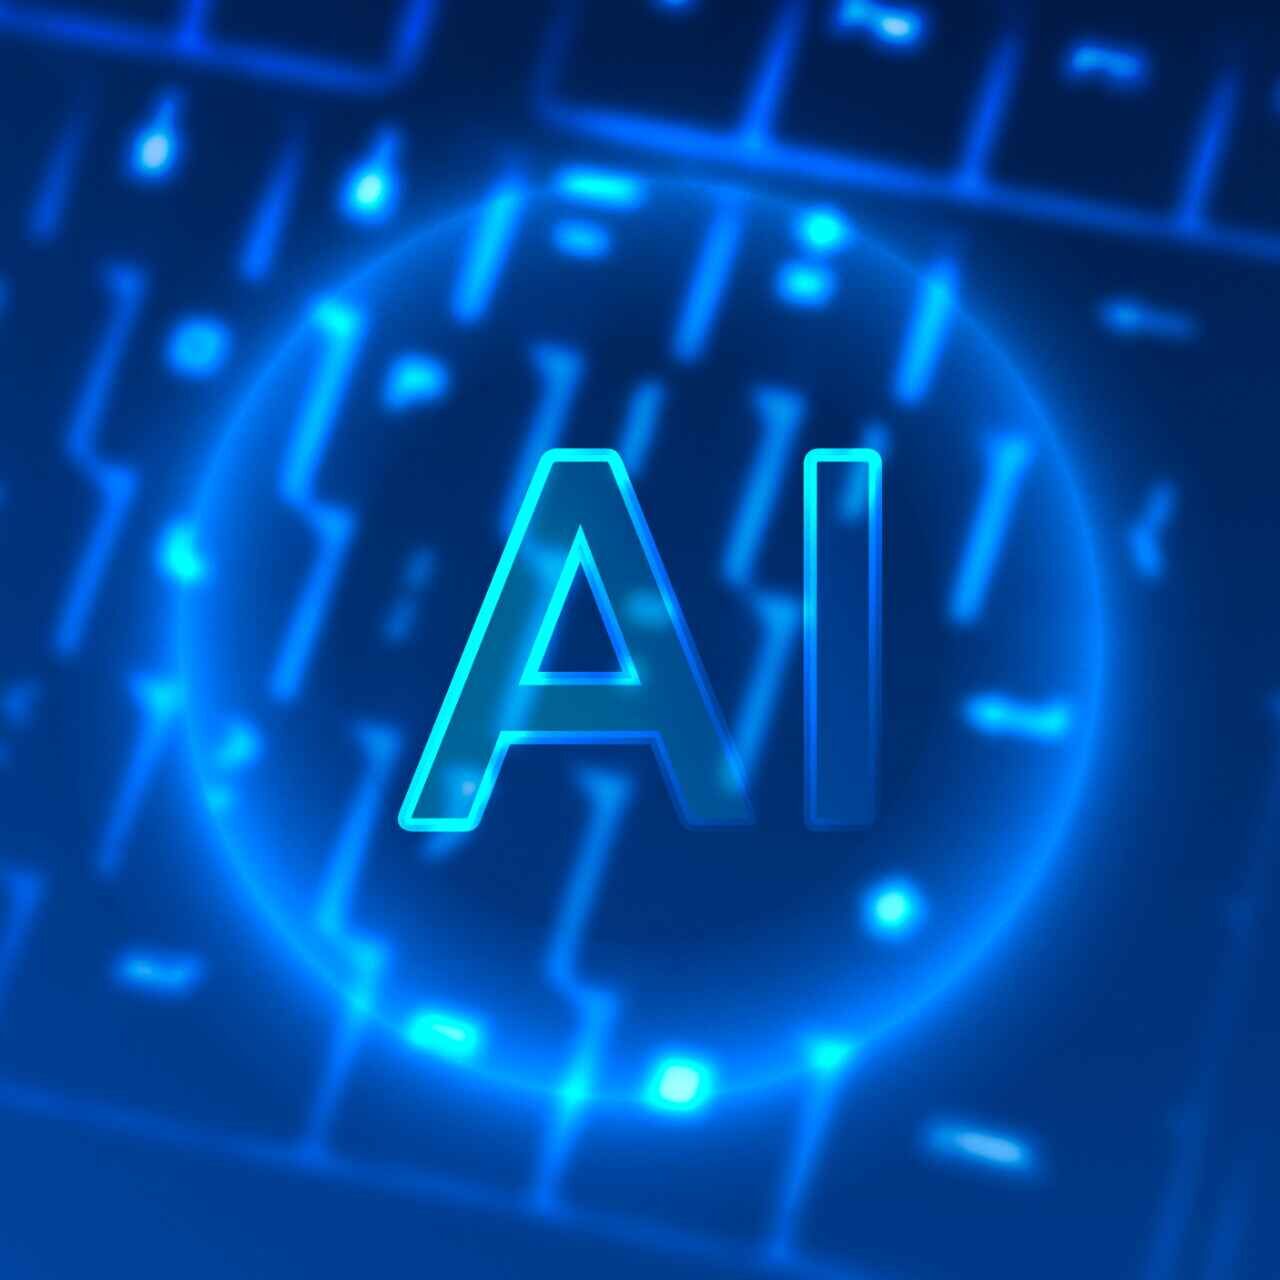 Капірайтынг AI: Авалоданне мастацтвам лічбавай камунікацыі: Рост капірайтынгу AI у сучасным свеце